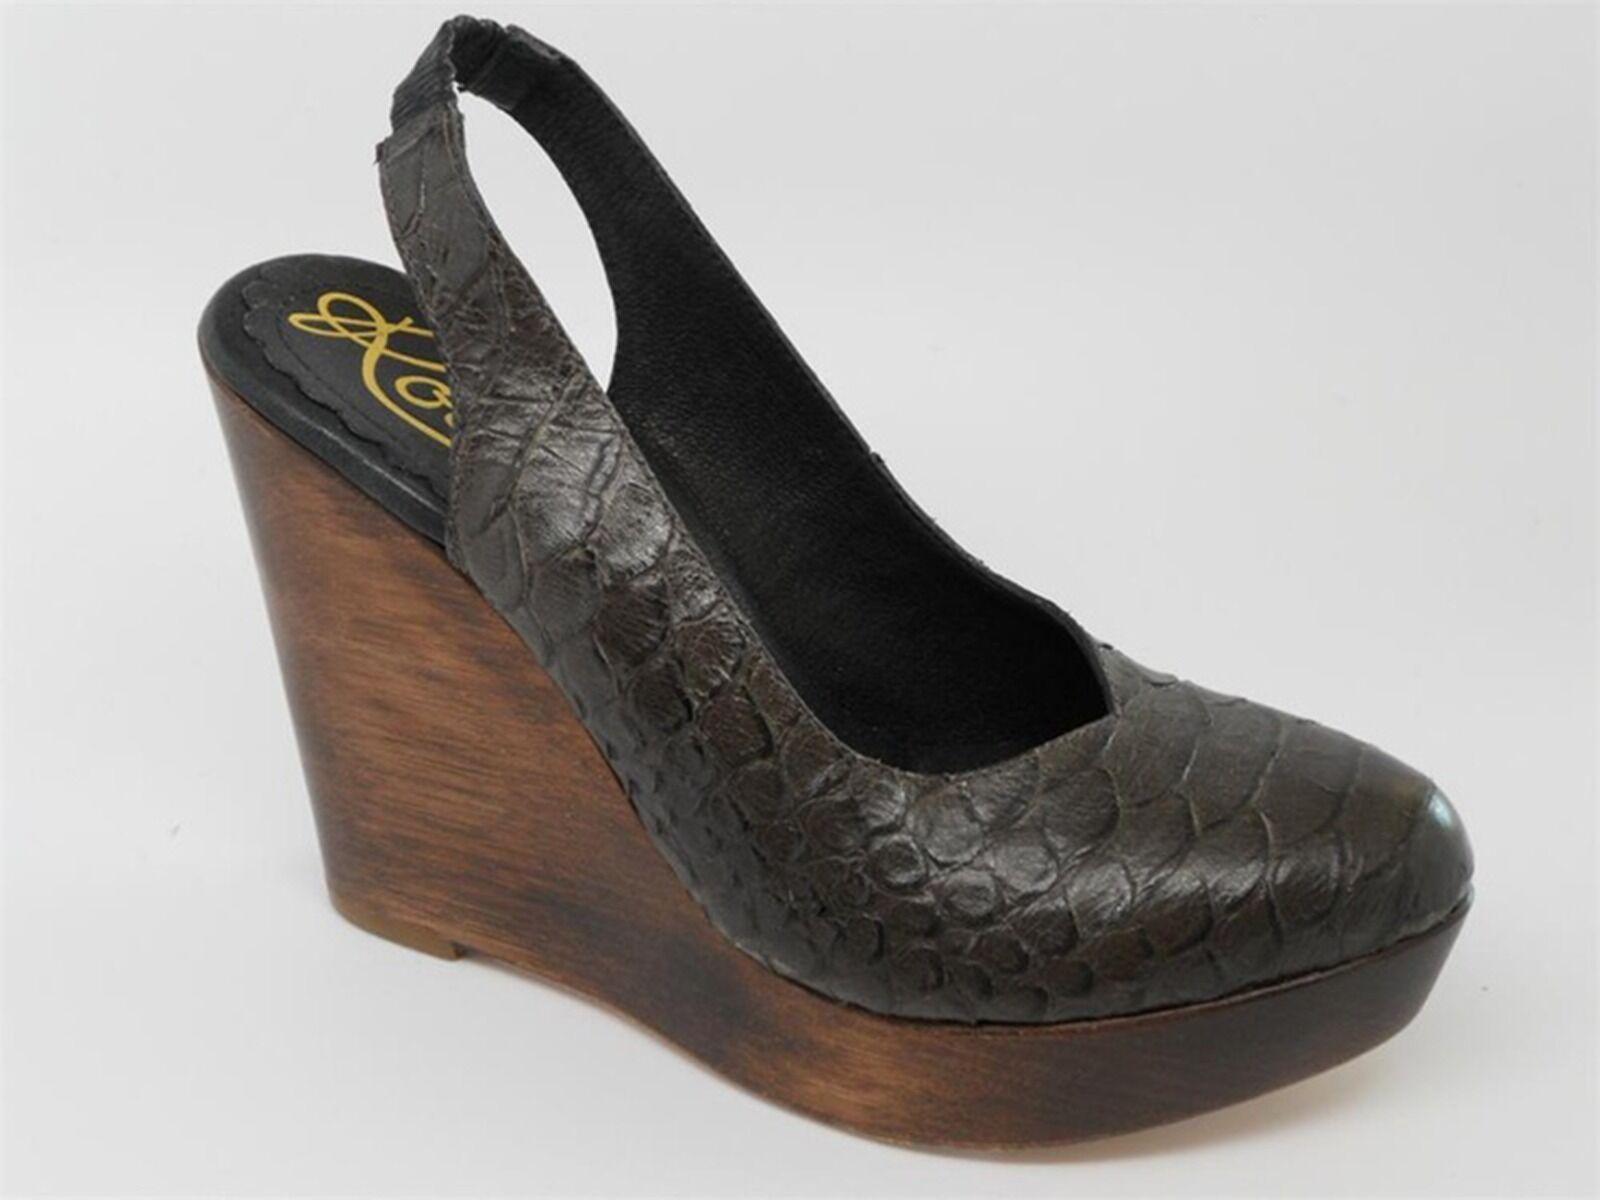 Rowen Leather Wooden Wedge Platform Sandals Dark Brown Size 7.5 M - SVNYFancy